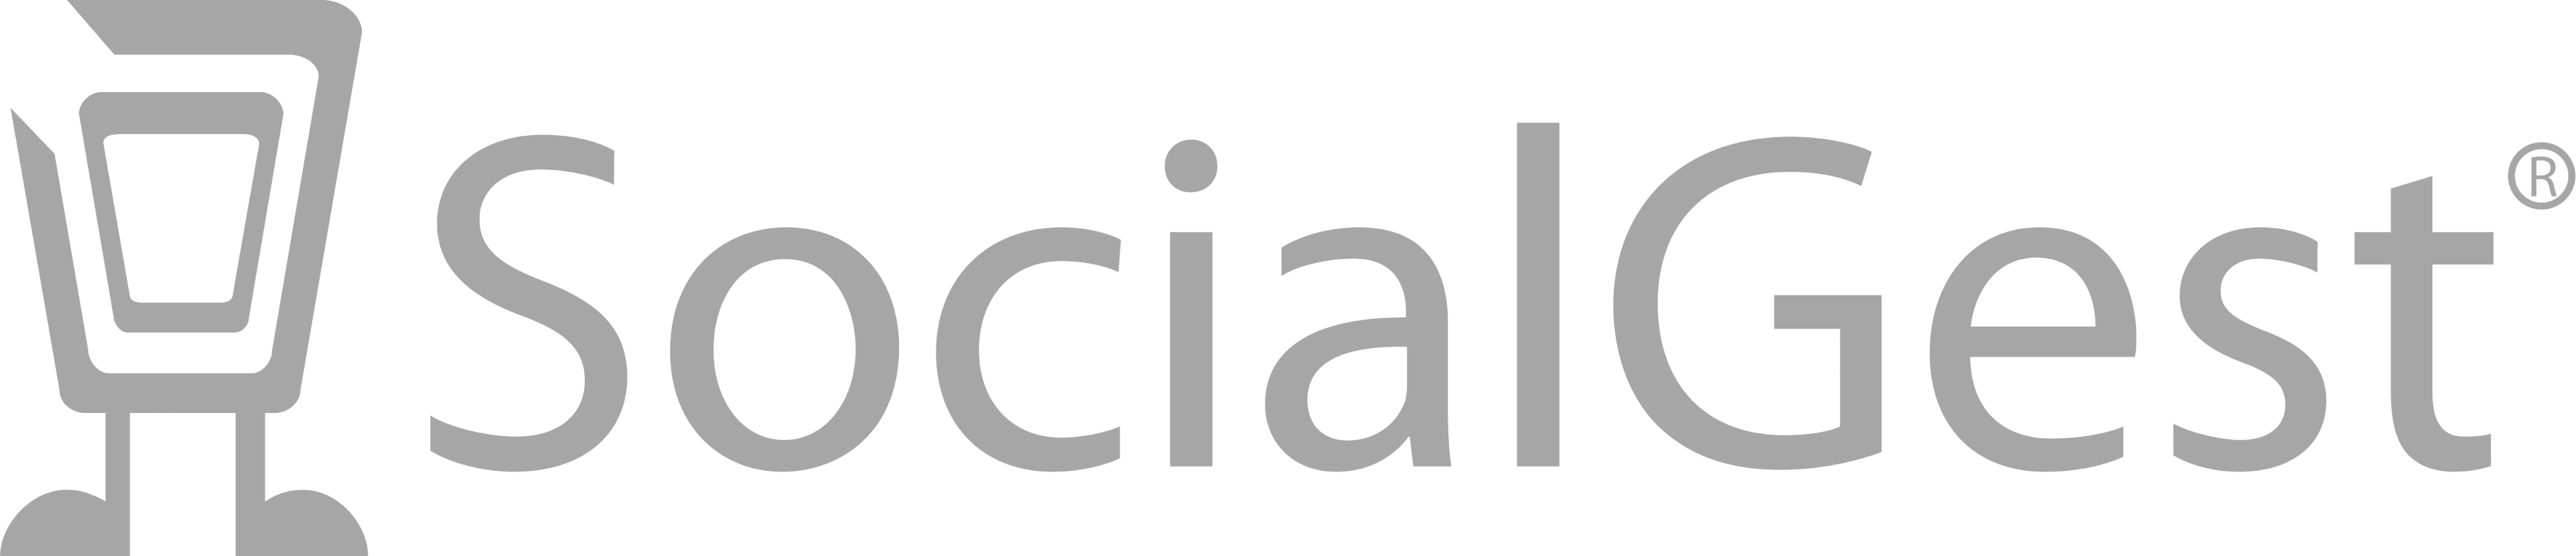 Socialgest Logo Png Instagram Post Planner Free Scheduling - Socialgest Logo Png (4000x863), Png Download